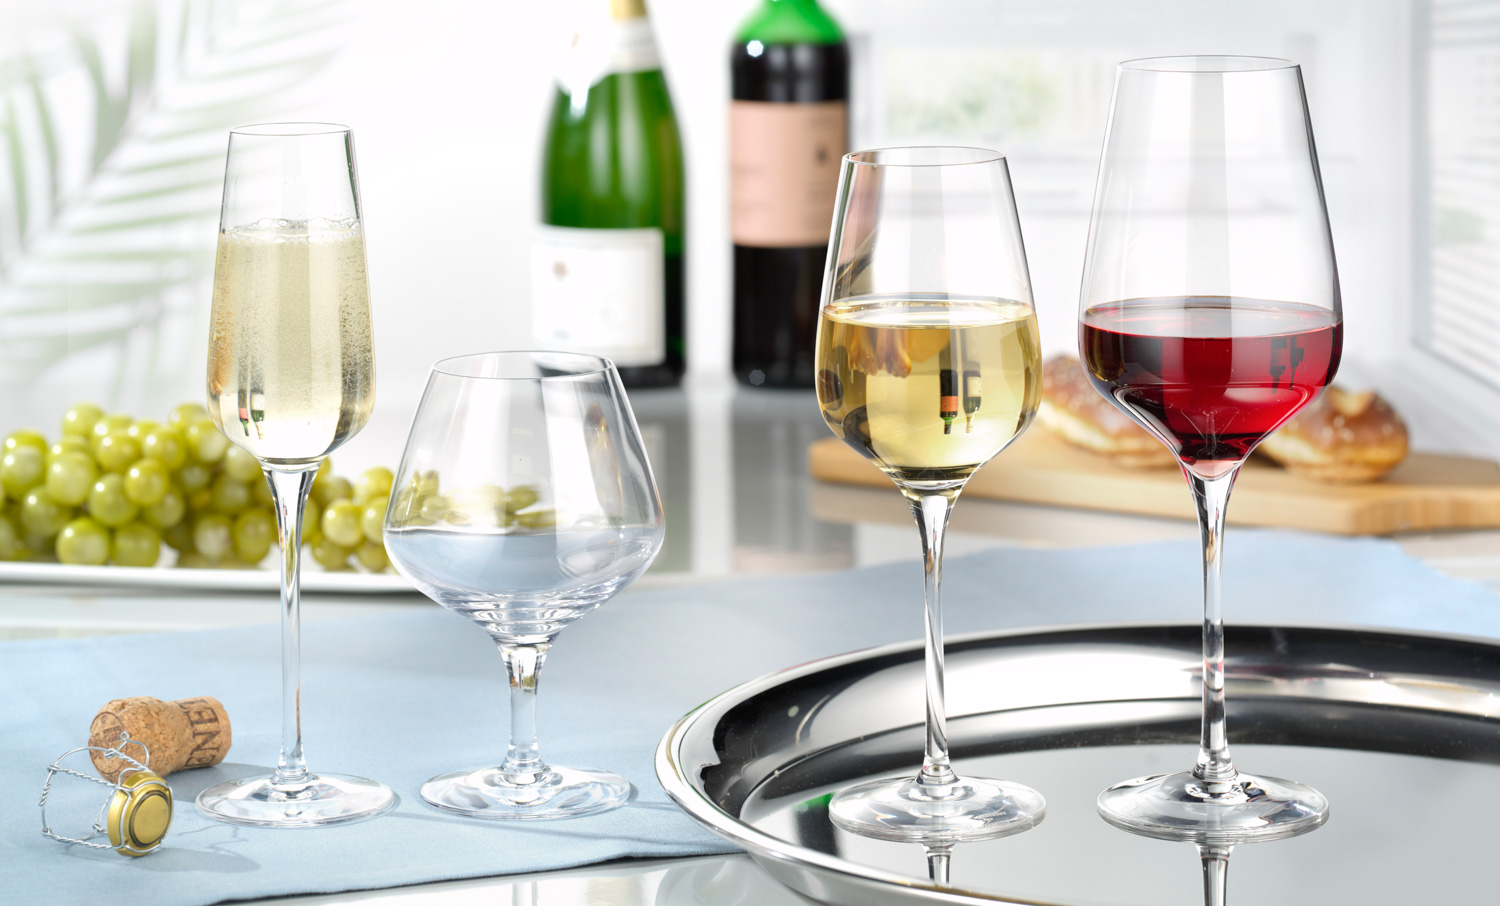 Weinglas SUBLYM, Inhalt: 350 ml, Höhe: 230 mm, Durchmesser: 80 mm, Kwarx-Glas, Chef & Sommelier.